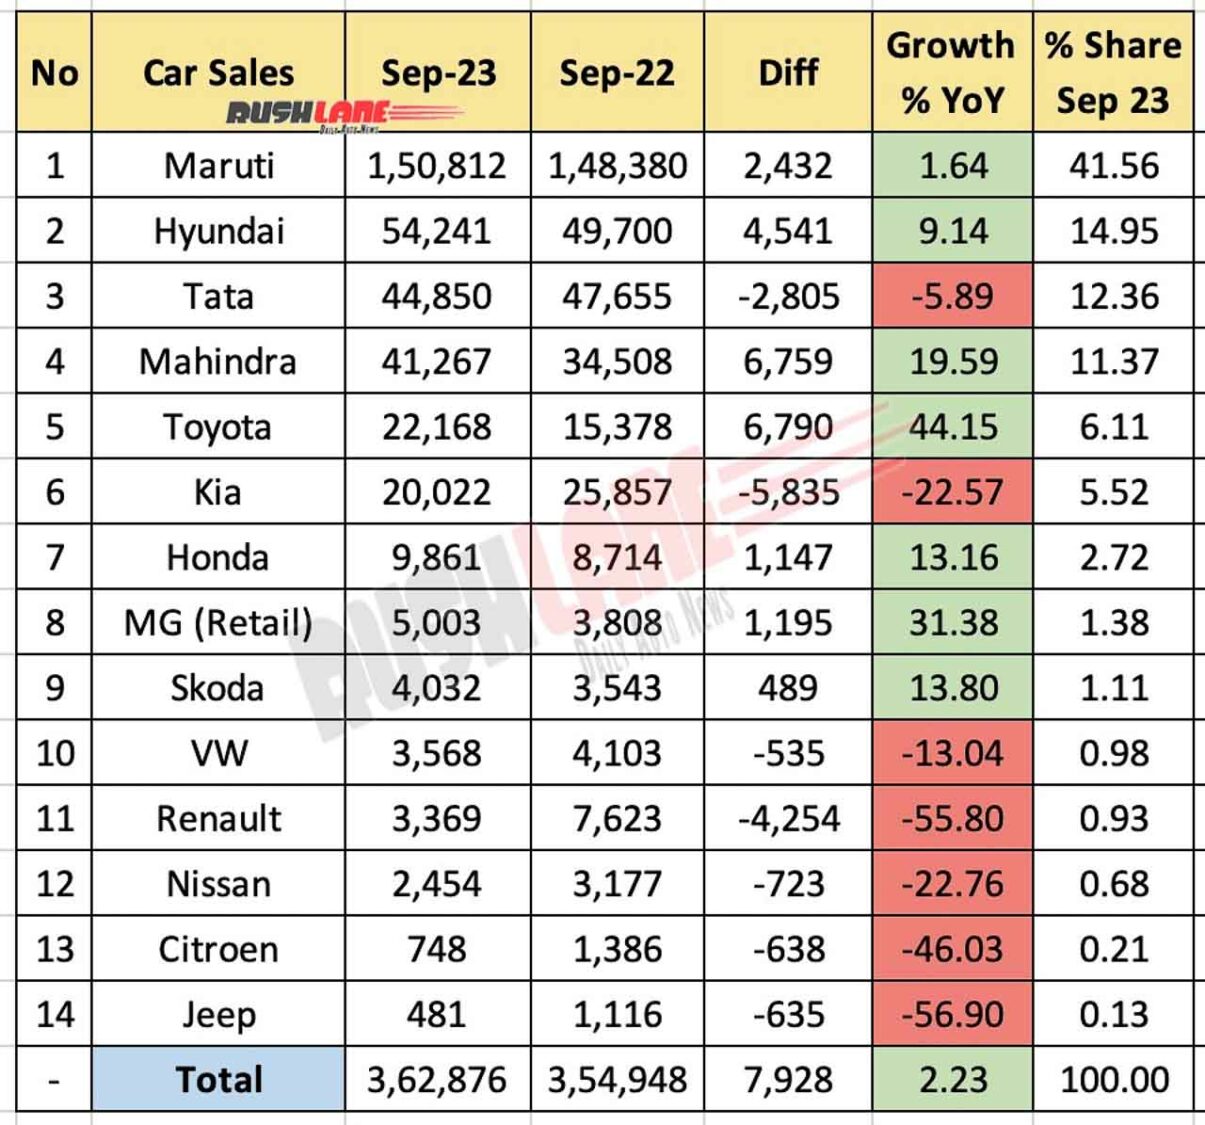 Car Sales Sep 2023 vs Sep 2022 - YoY comparison